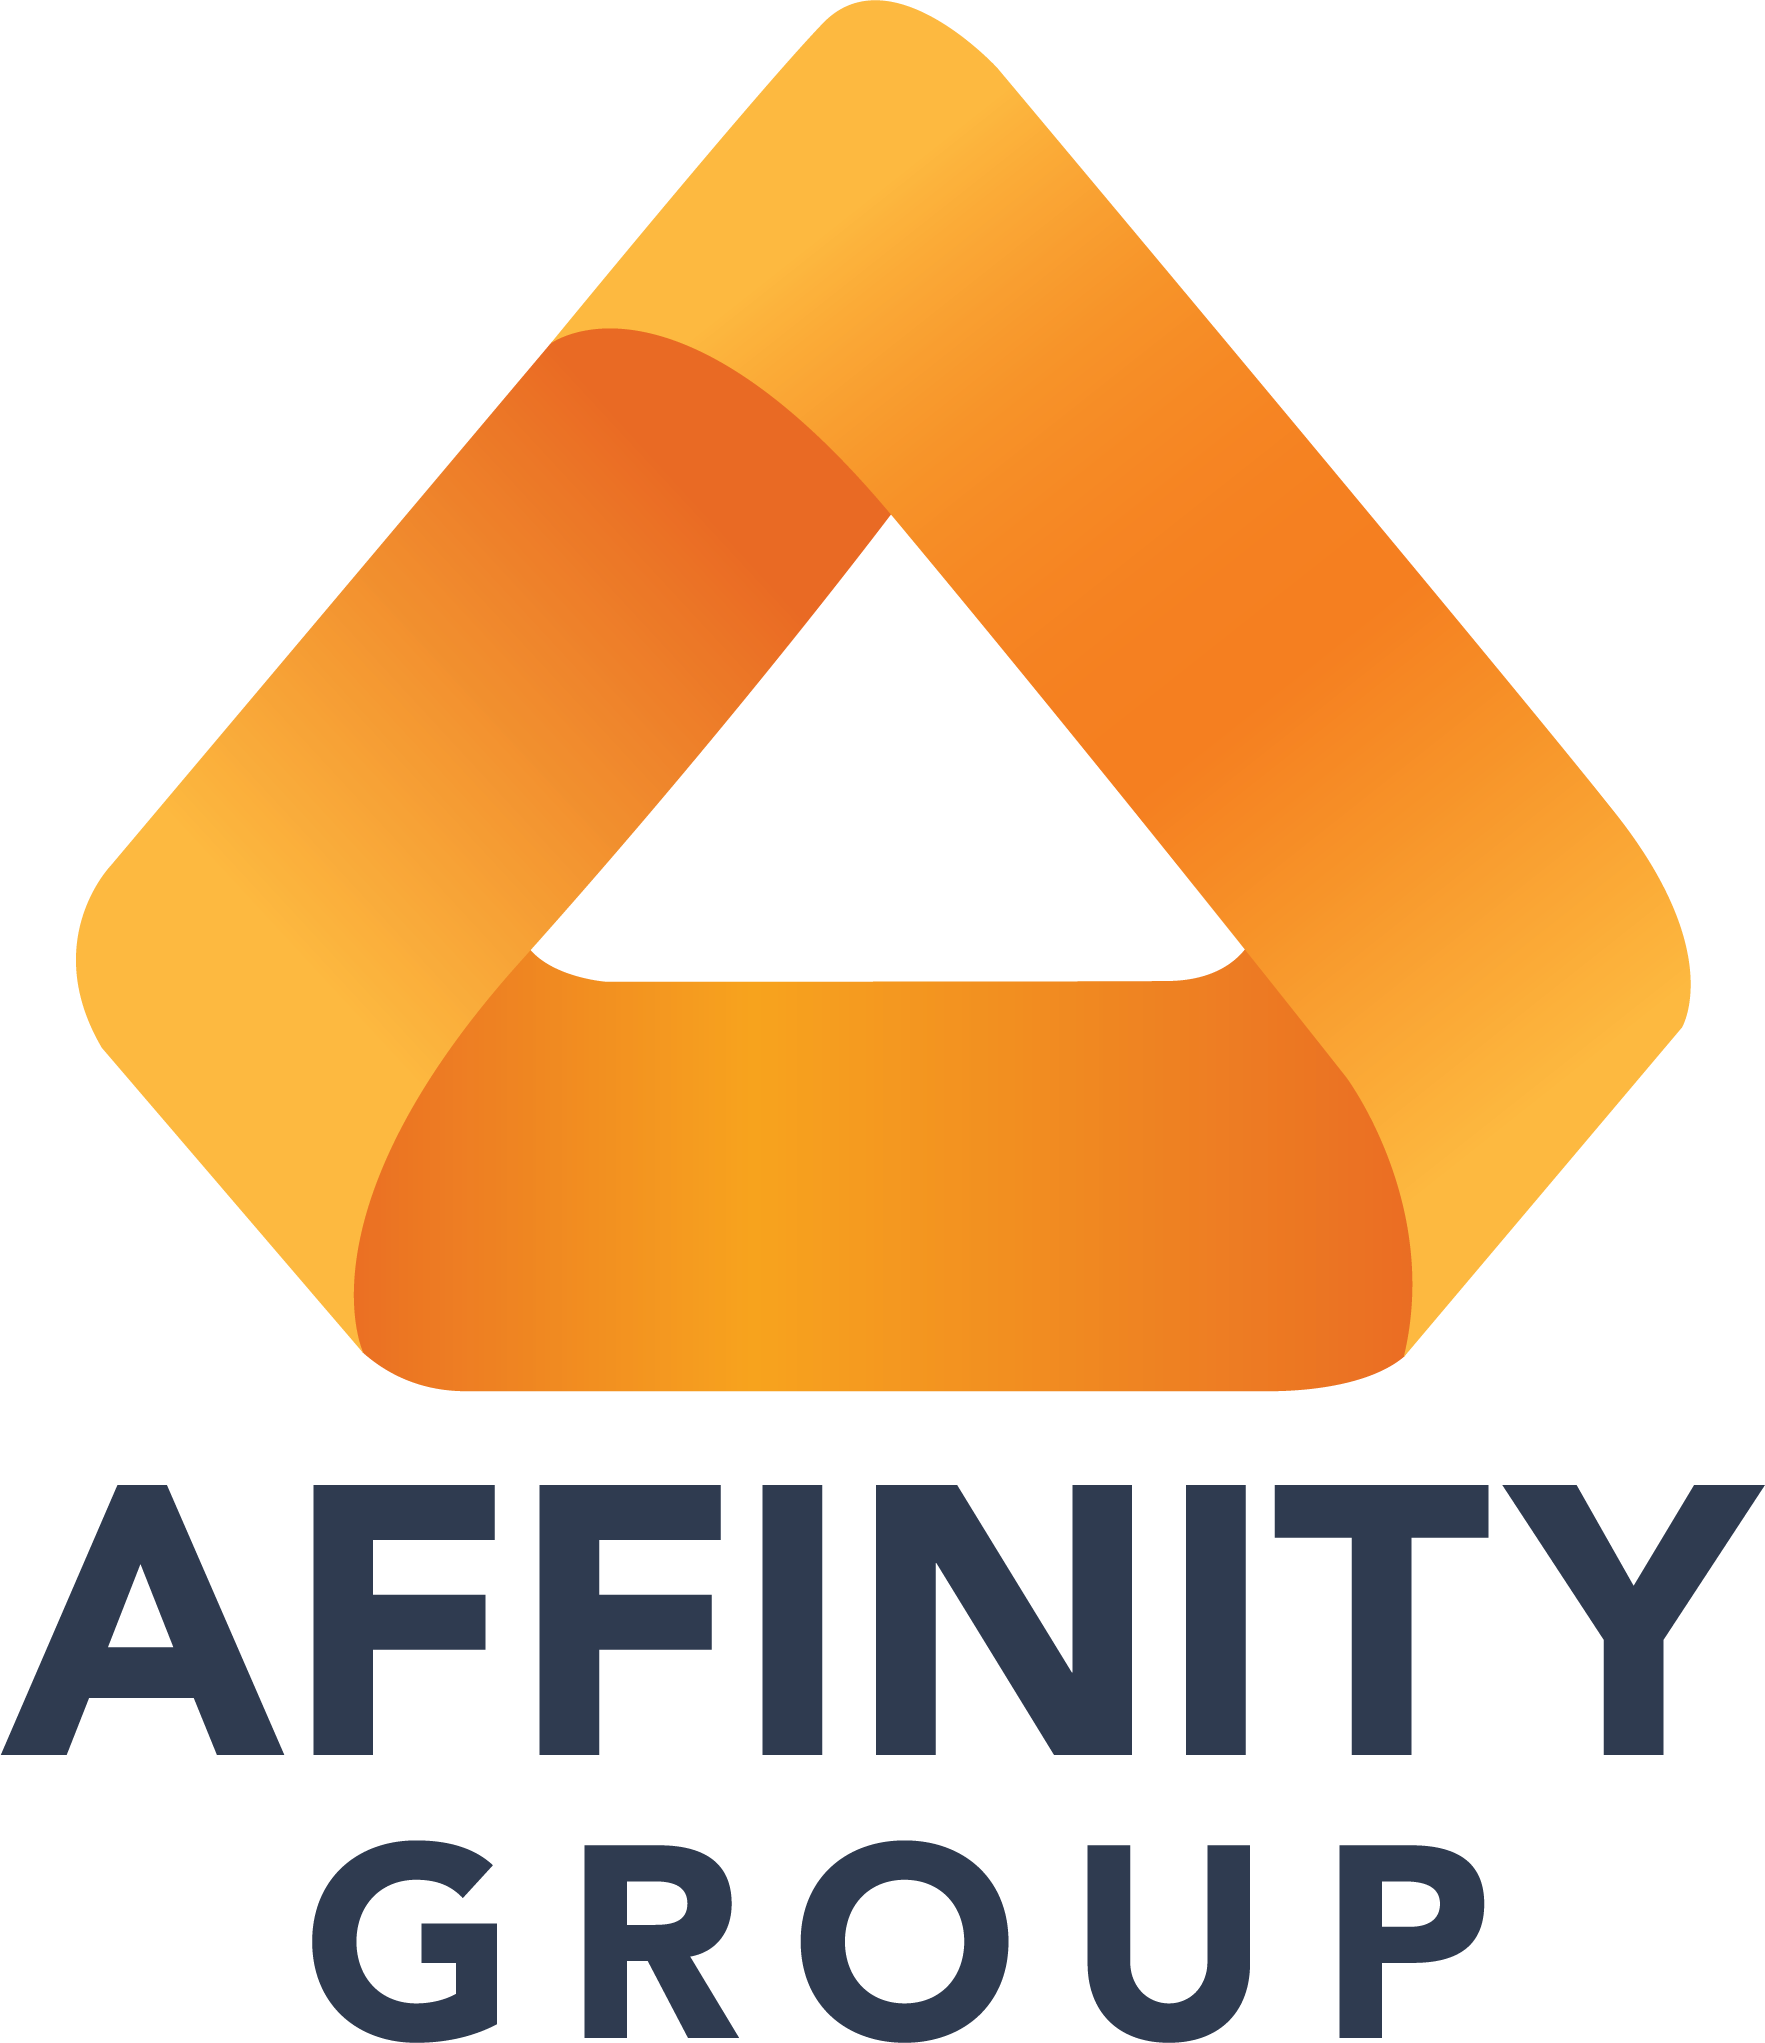 Affinity Group logo